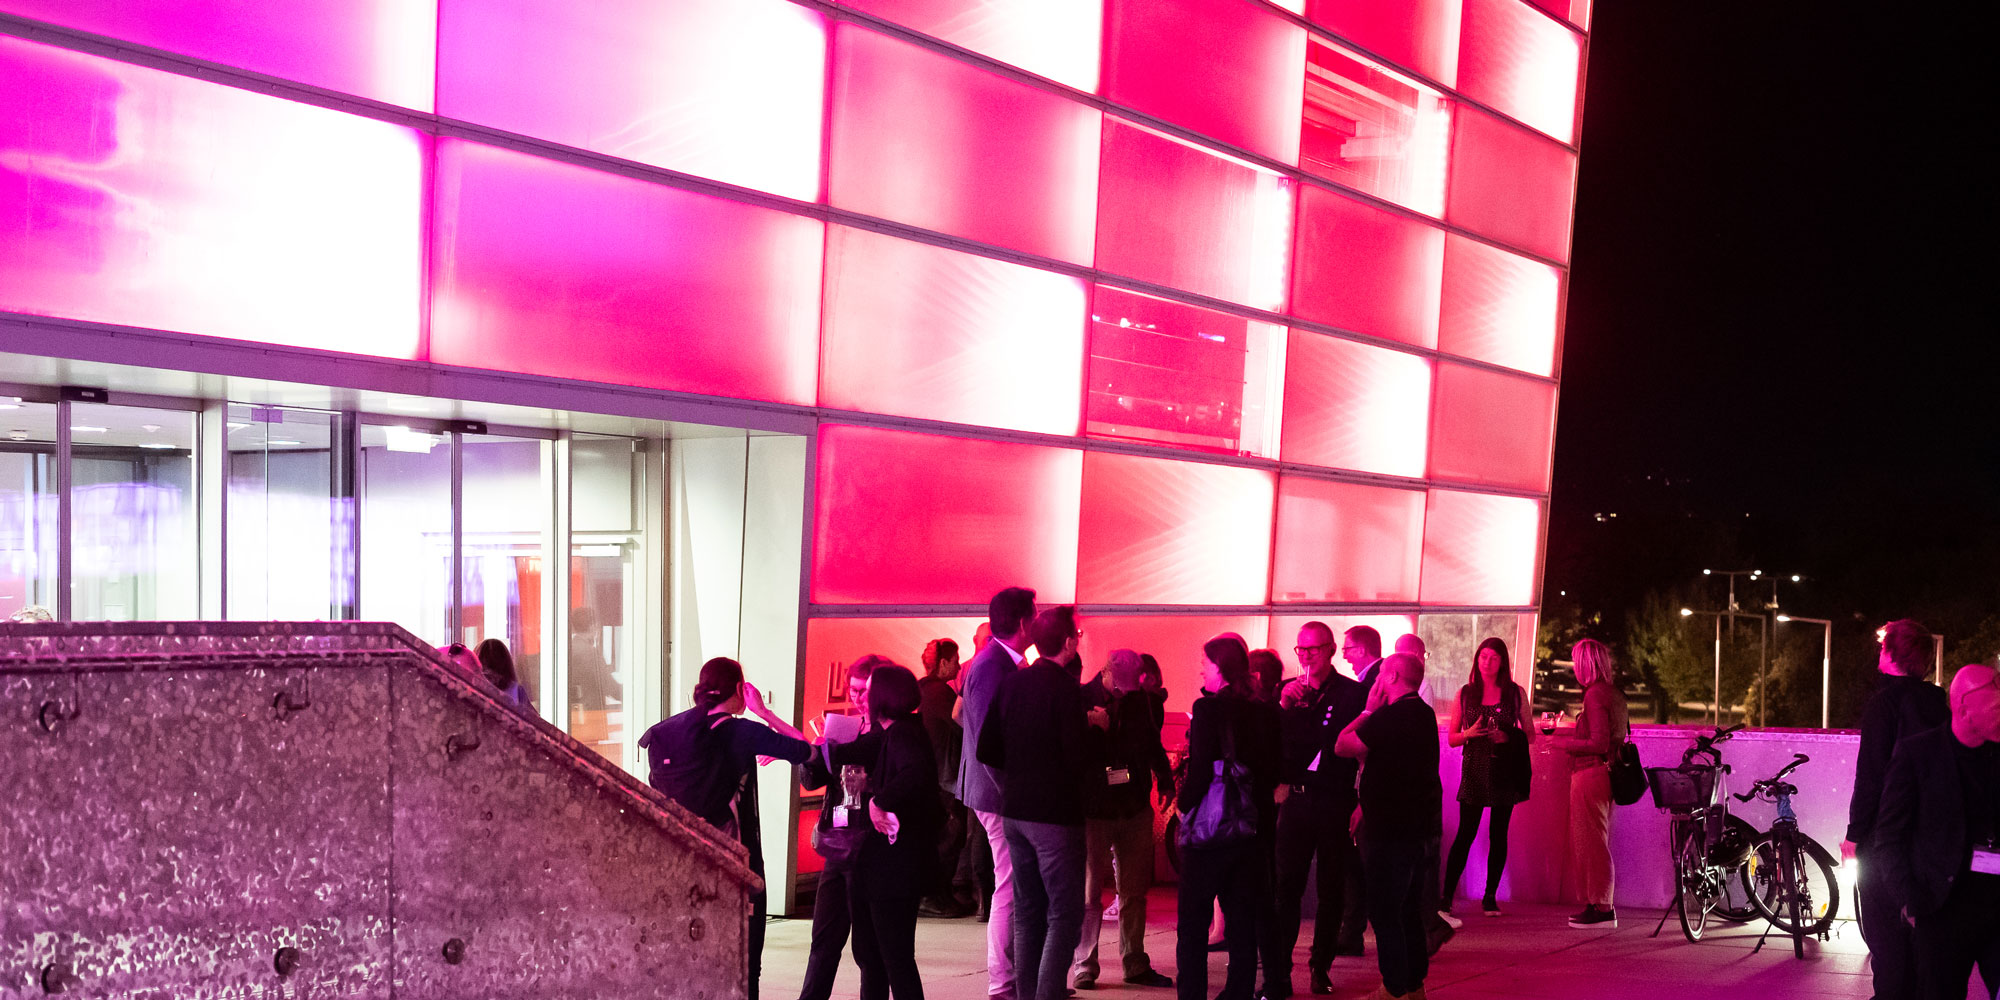 Futurelab Day, Night Performances: Zahlreiche Gäste – Freund*innen, Partner*innen und (ehemalige) Mitarbeiter*innen der Ars Electronica – feierten zusammen mit dem Team des Ars Electronica Futurelab diesen ganz besonderen Tag.